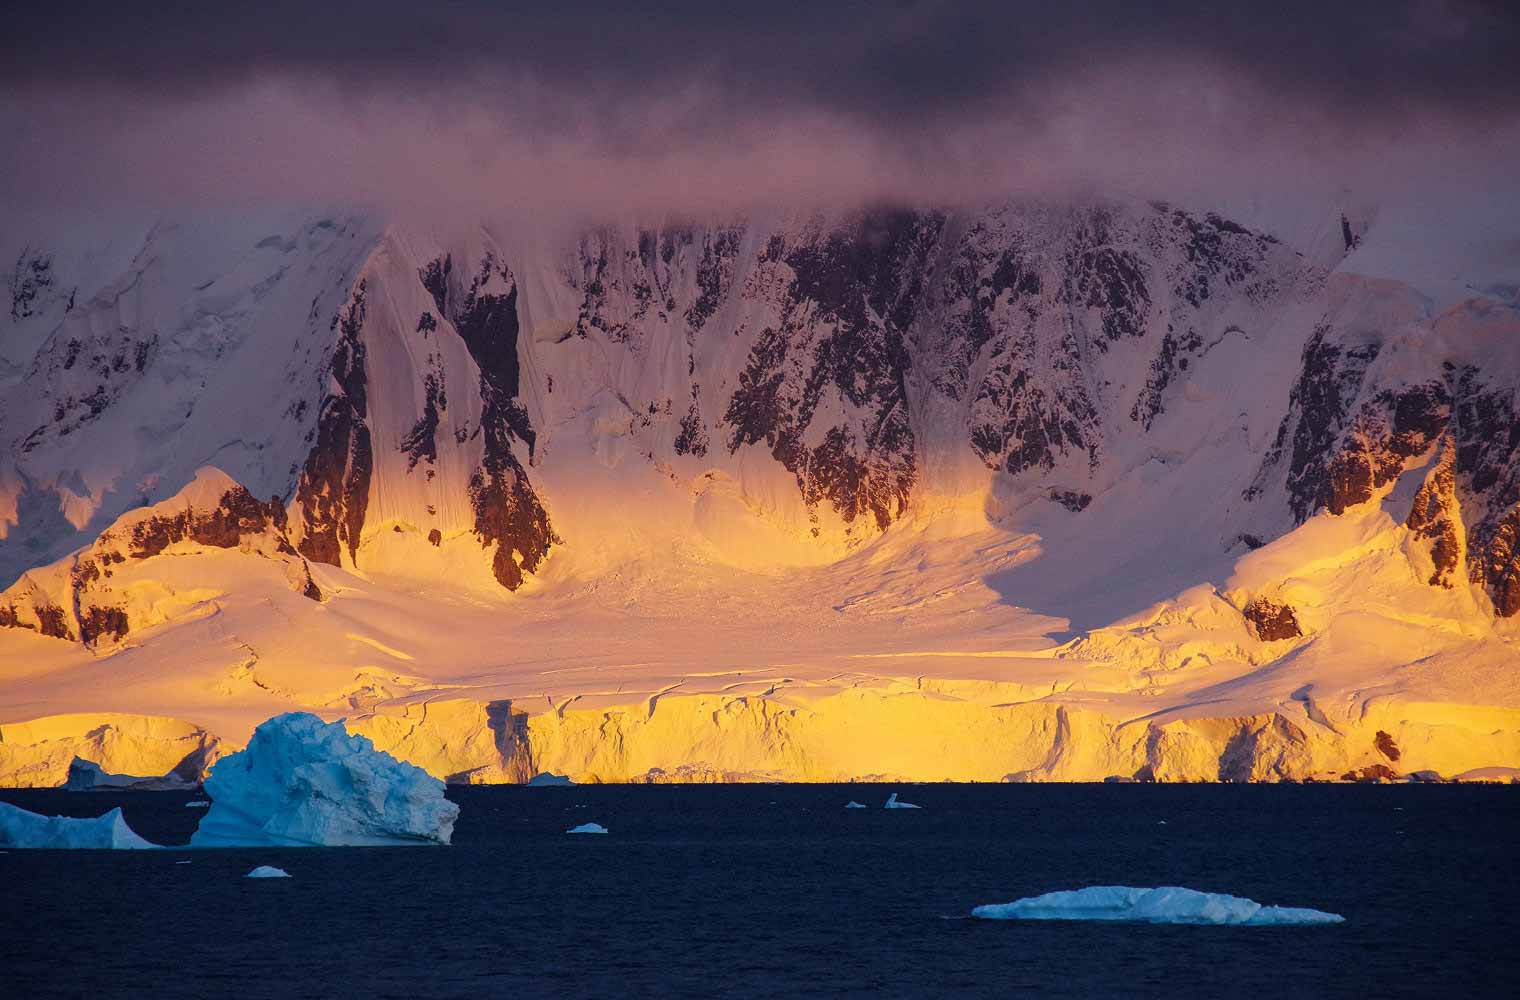 Ein großer Gletscher der Antarktis ist abgebildet. Im Vordergrund sieht man das dunkelblaue Meer und einen treibenden Eisberg. Auch etwas Schelfeis befindet sich im Wasser.  Der Himmel ist von einem hellgrauen Nebel bedeckt. 